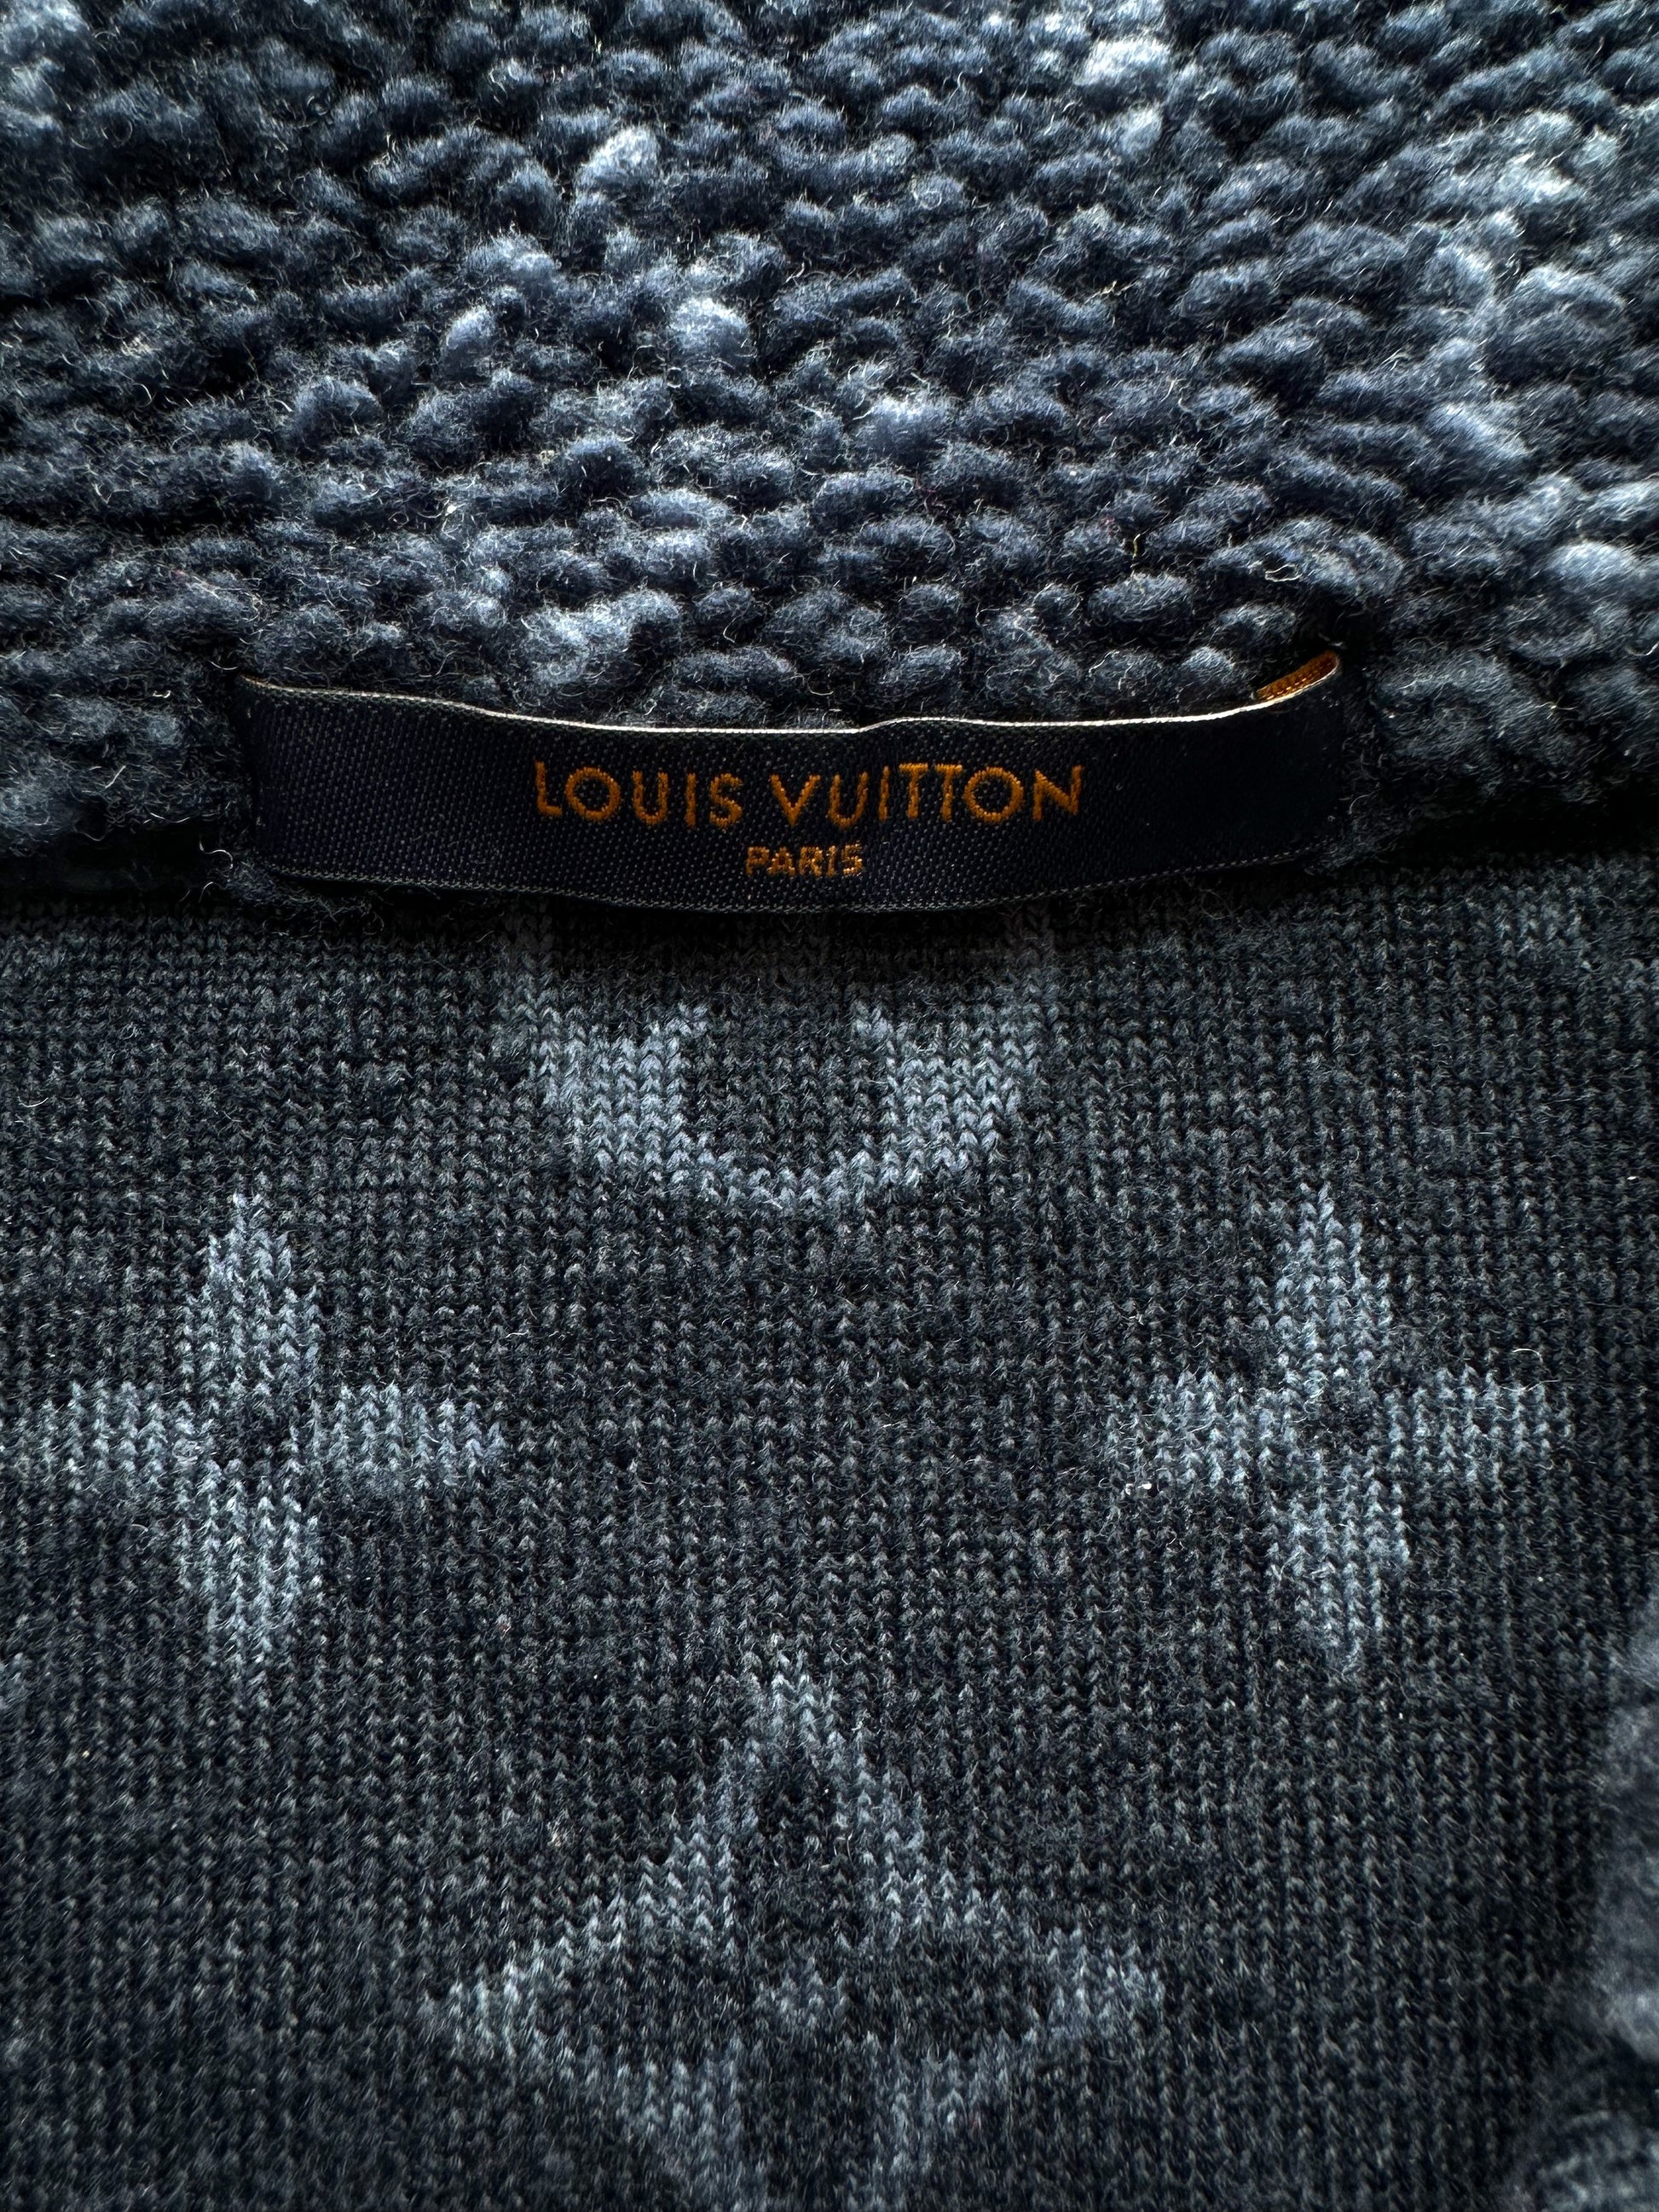 Louis Vuitton Monogram Fleece Parka